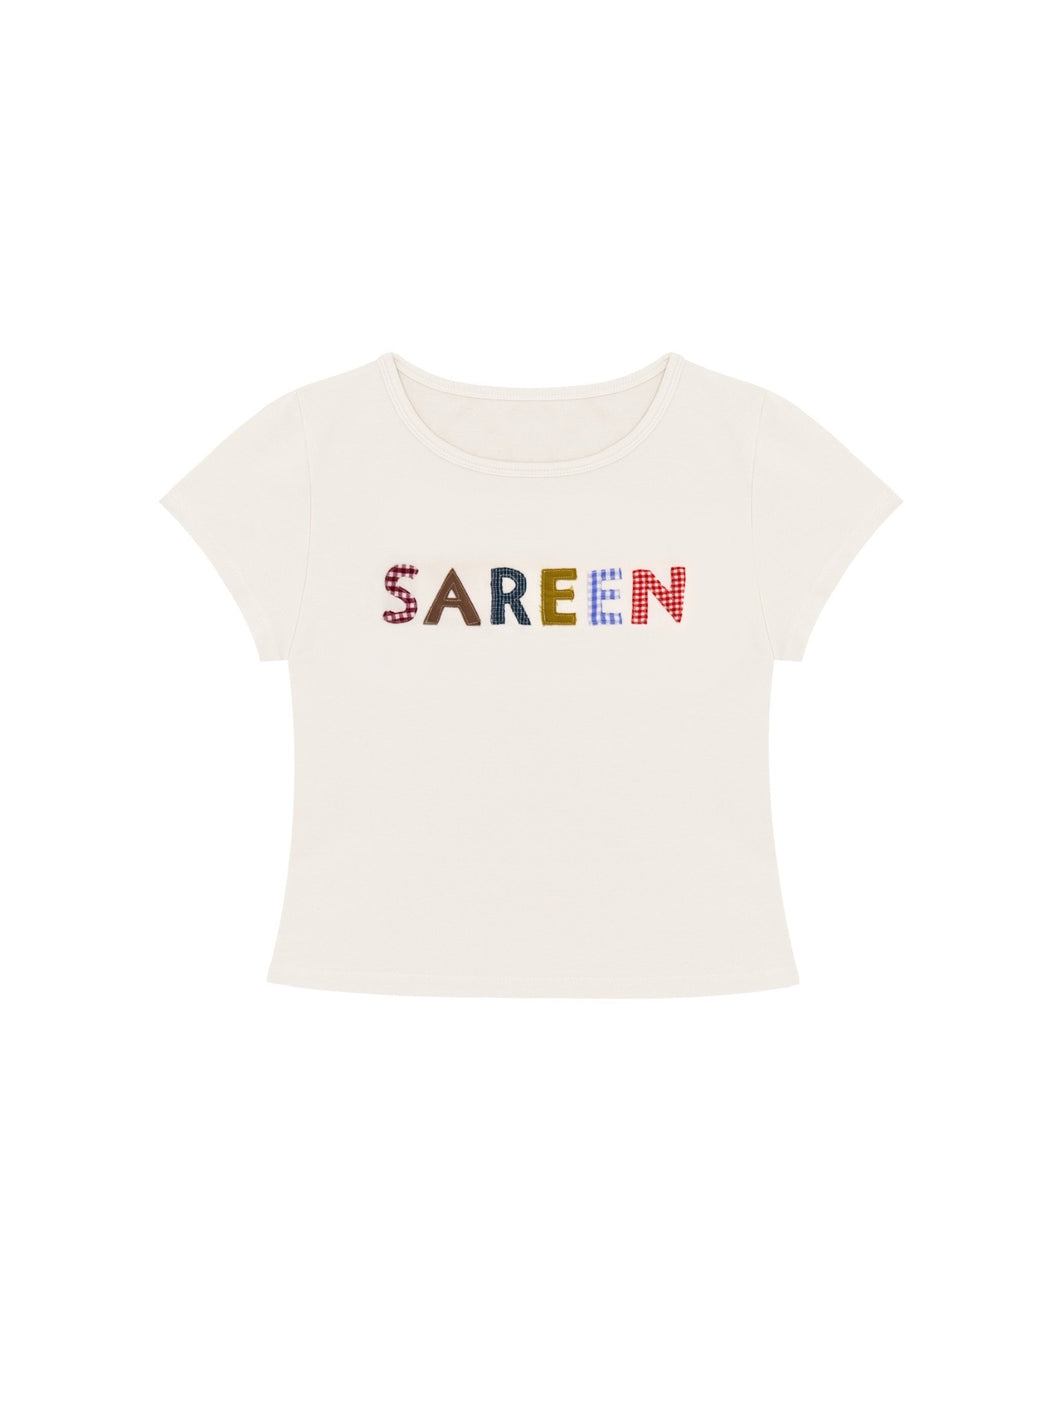 SAREEN Baby Tee